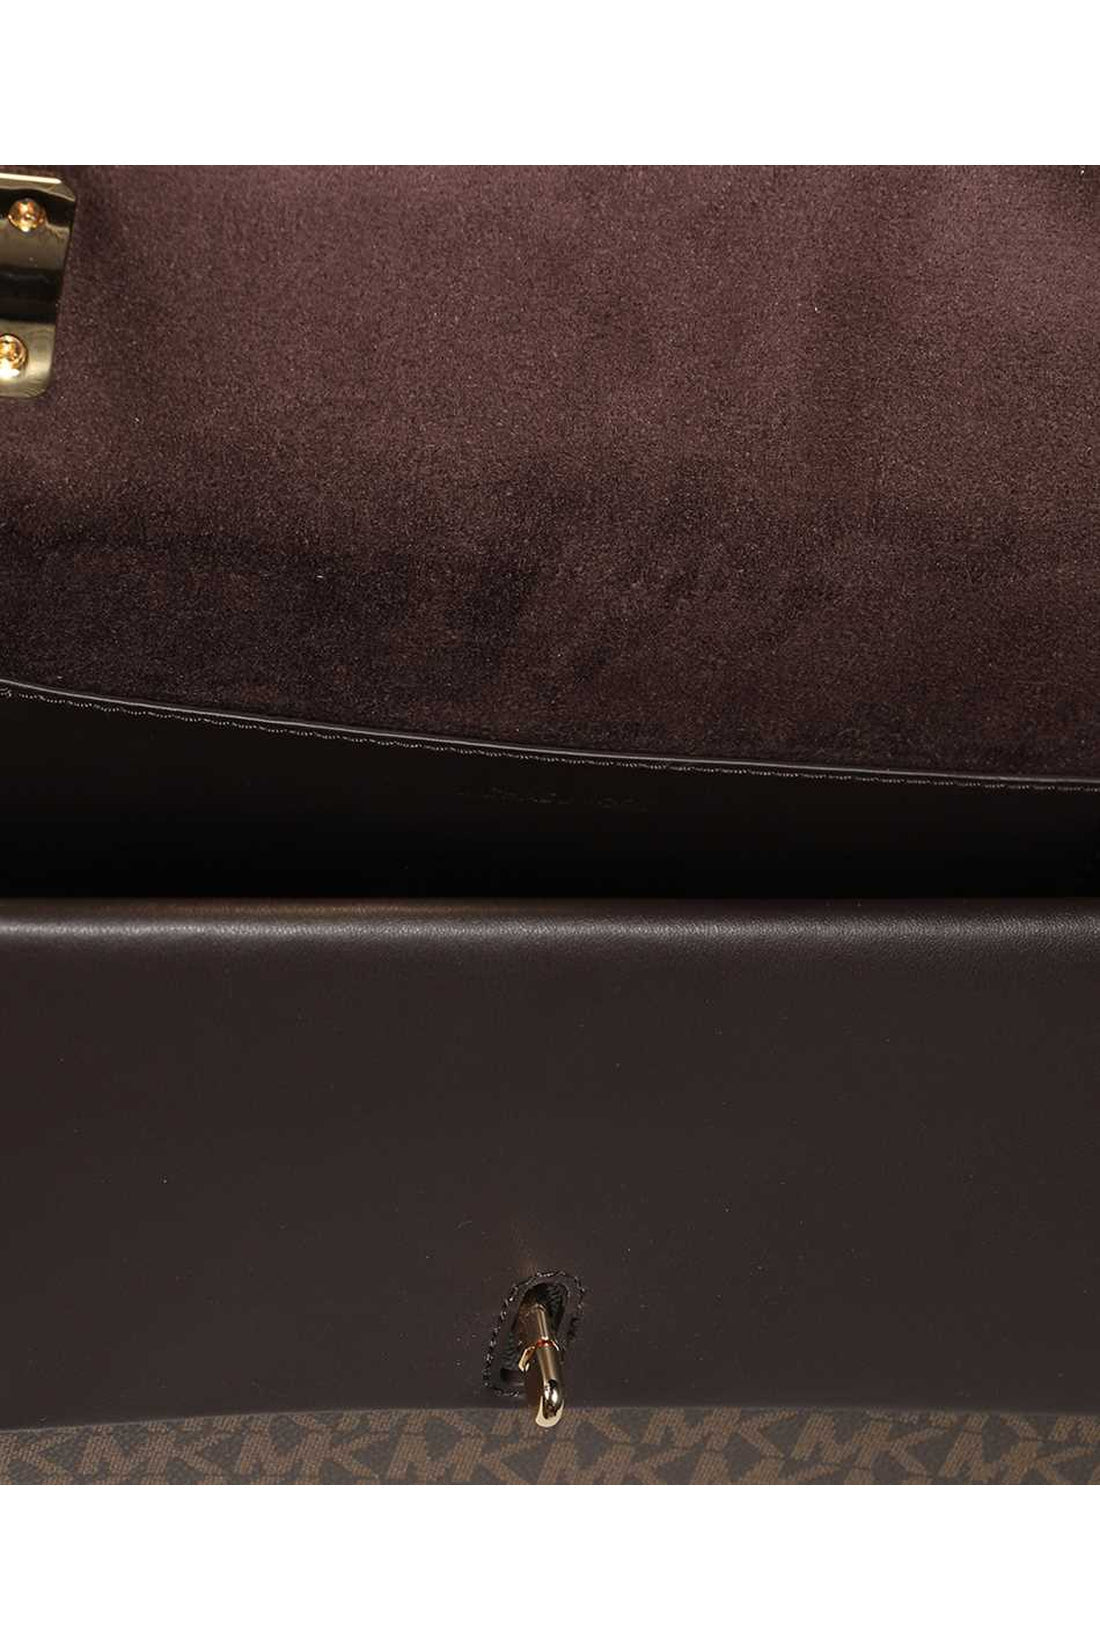 MICHAEL MICHAEL KORS-OUTLET-SALE-Greenwich logo print canvas handbag-ARCHIVIST